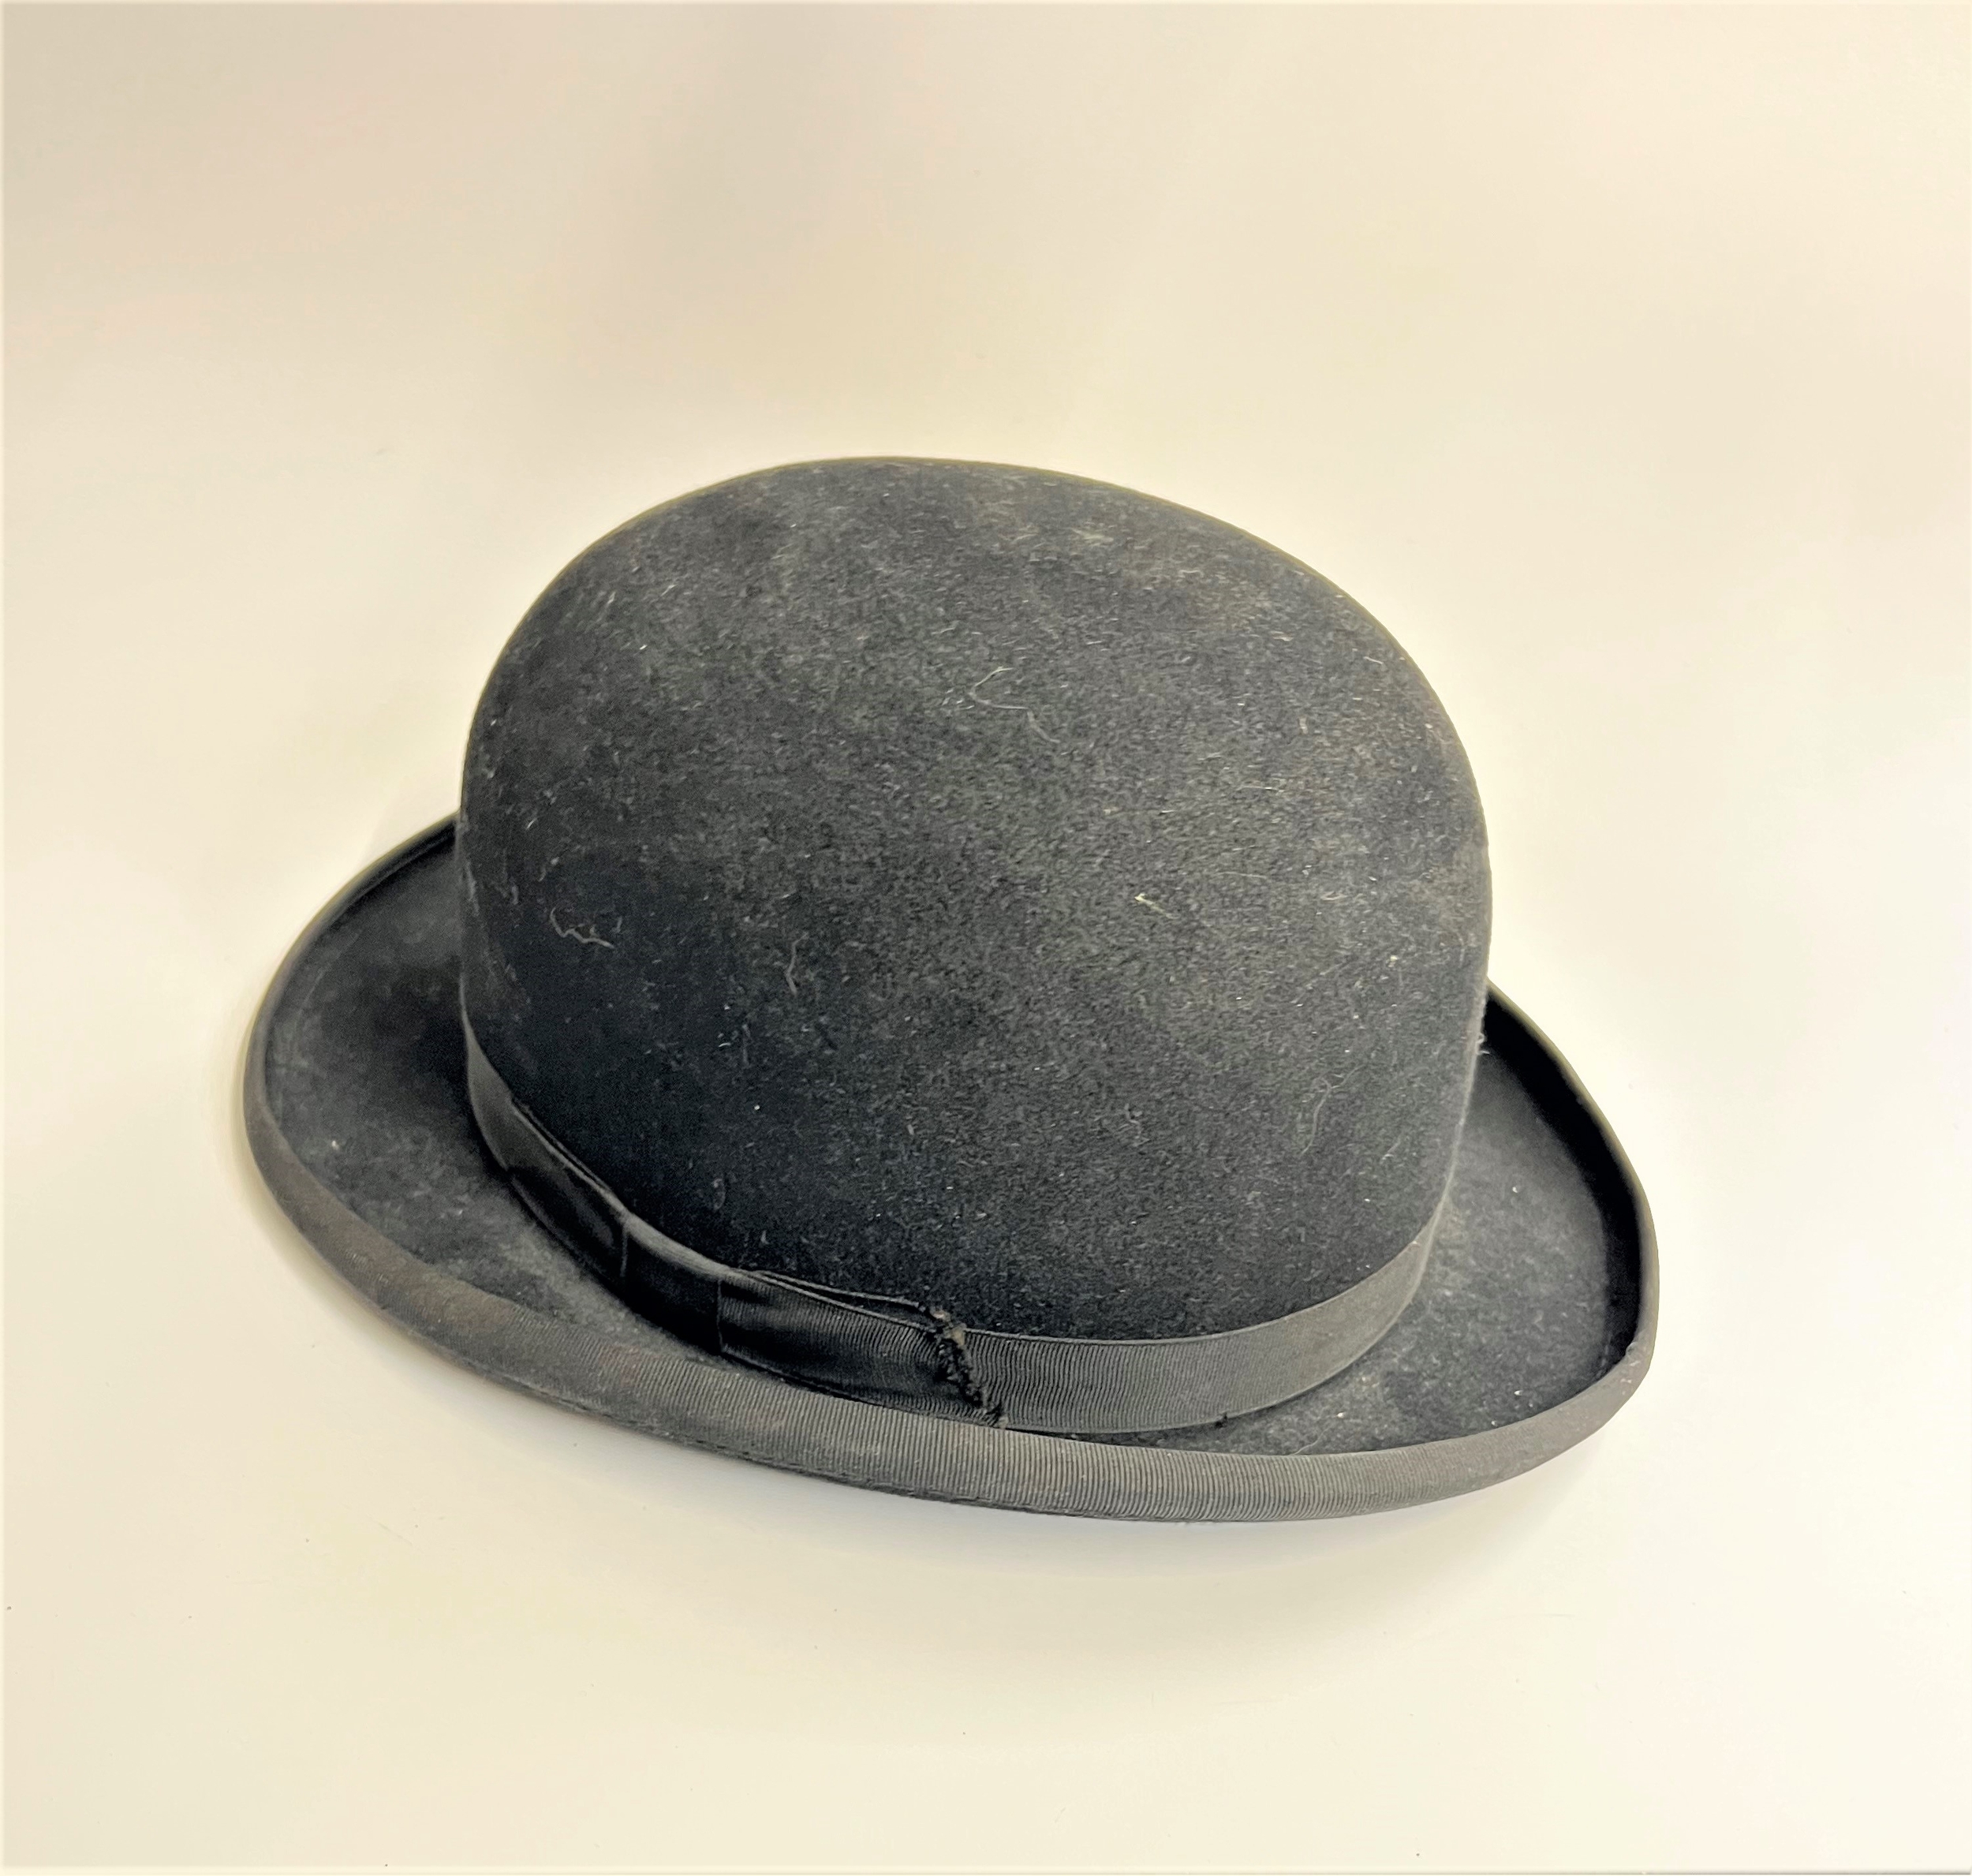 A Failsworth Bowler hat